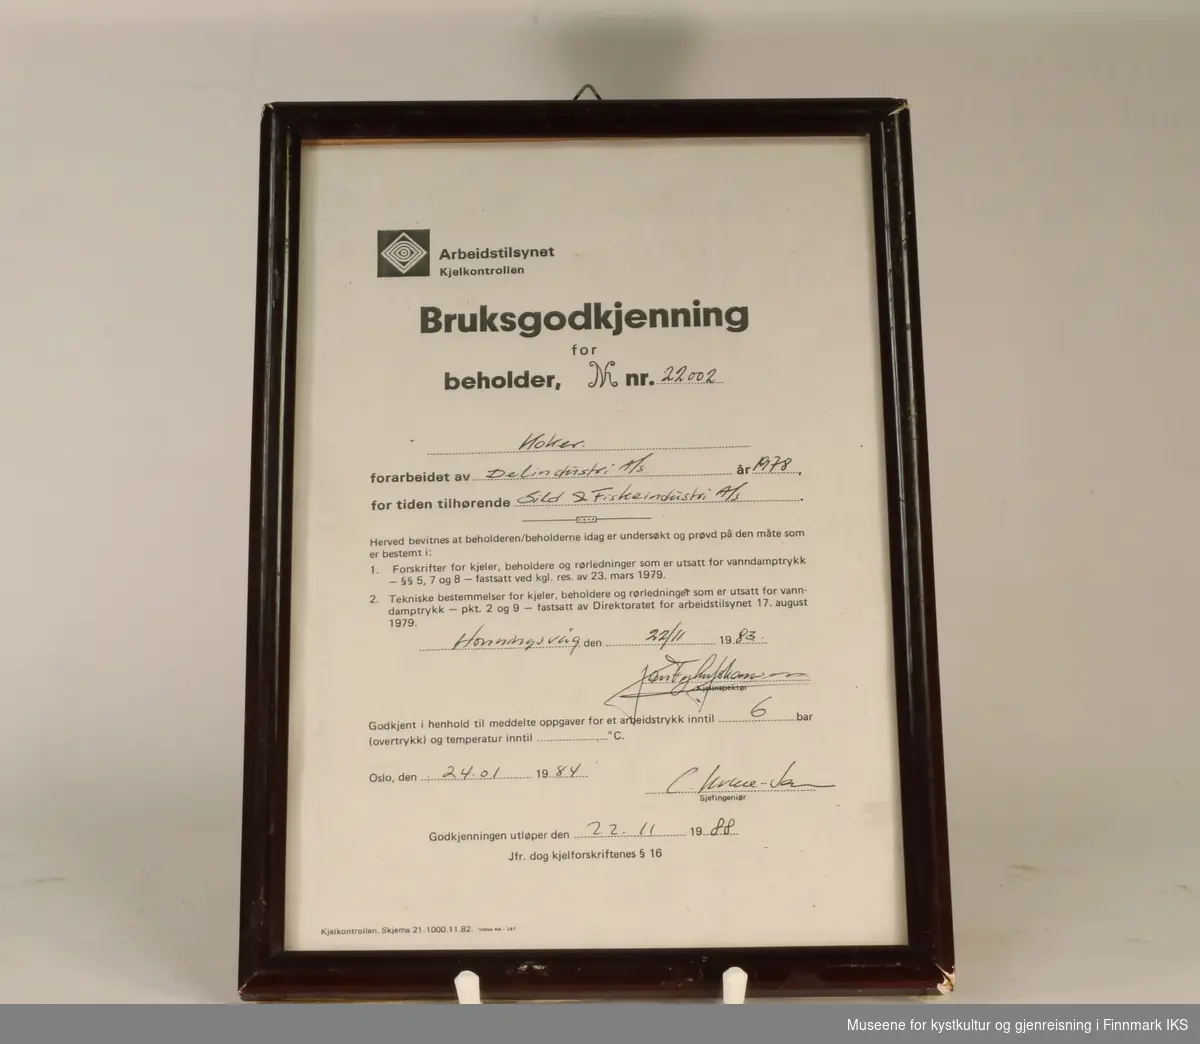 Bruksgodkjenning for koker (beholder nr. 22002) hos Sild & Fiskeindustri AS, utsendt av Arbeidstilsynet Kjelkontrollen i 1984. Hvitt papir med sort tekst. Utfylt for hånd. Innrammet.